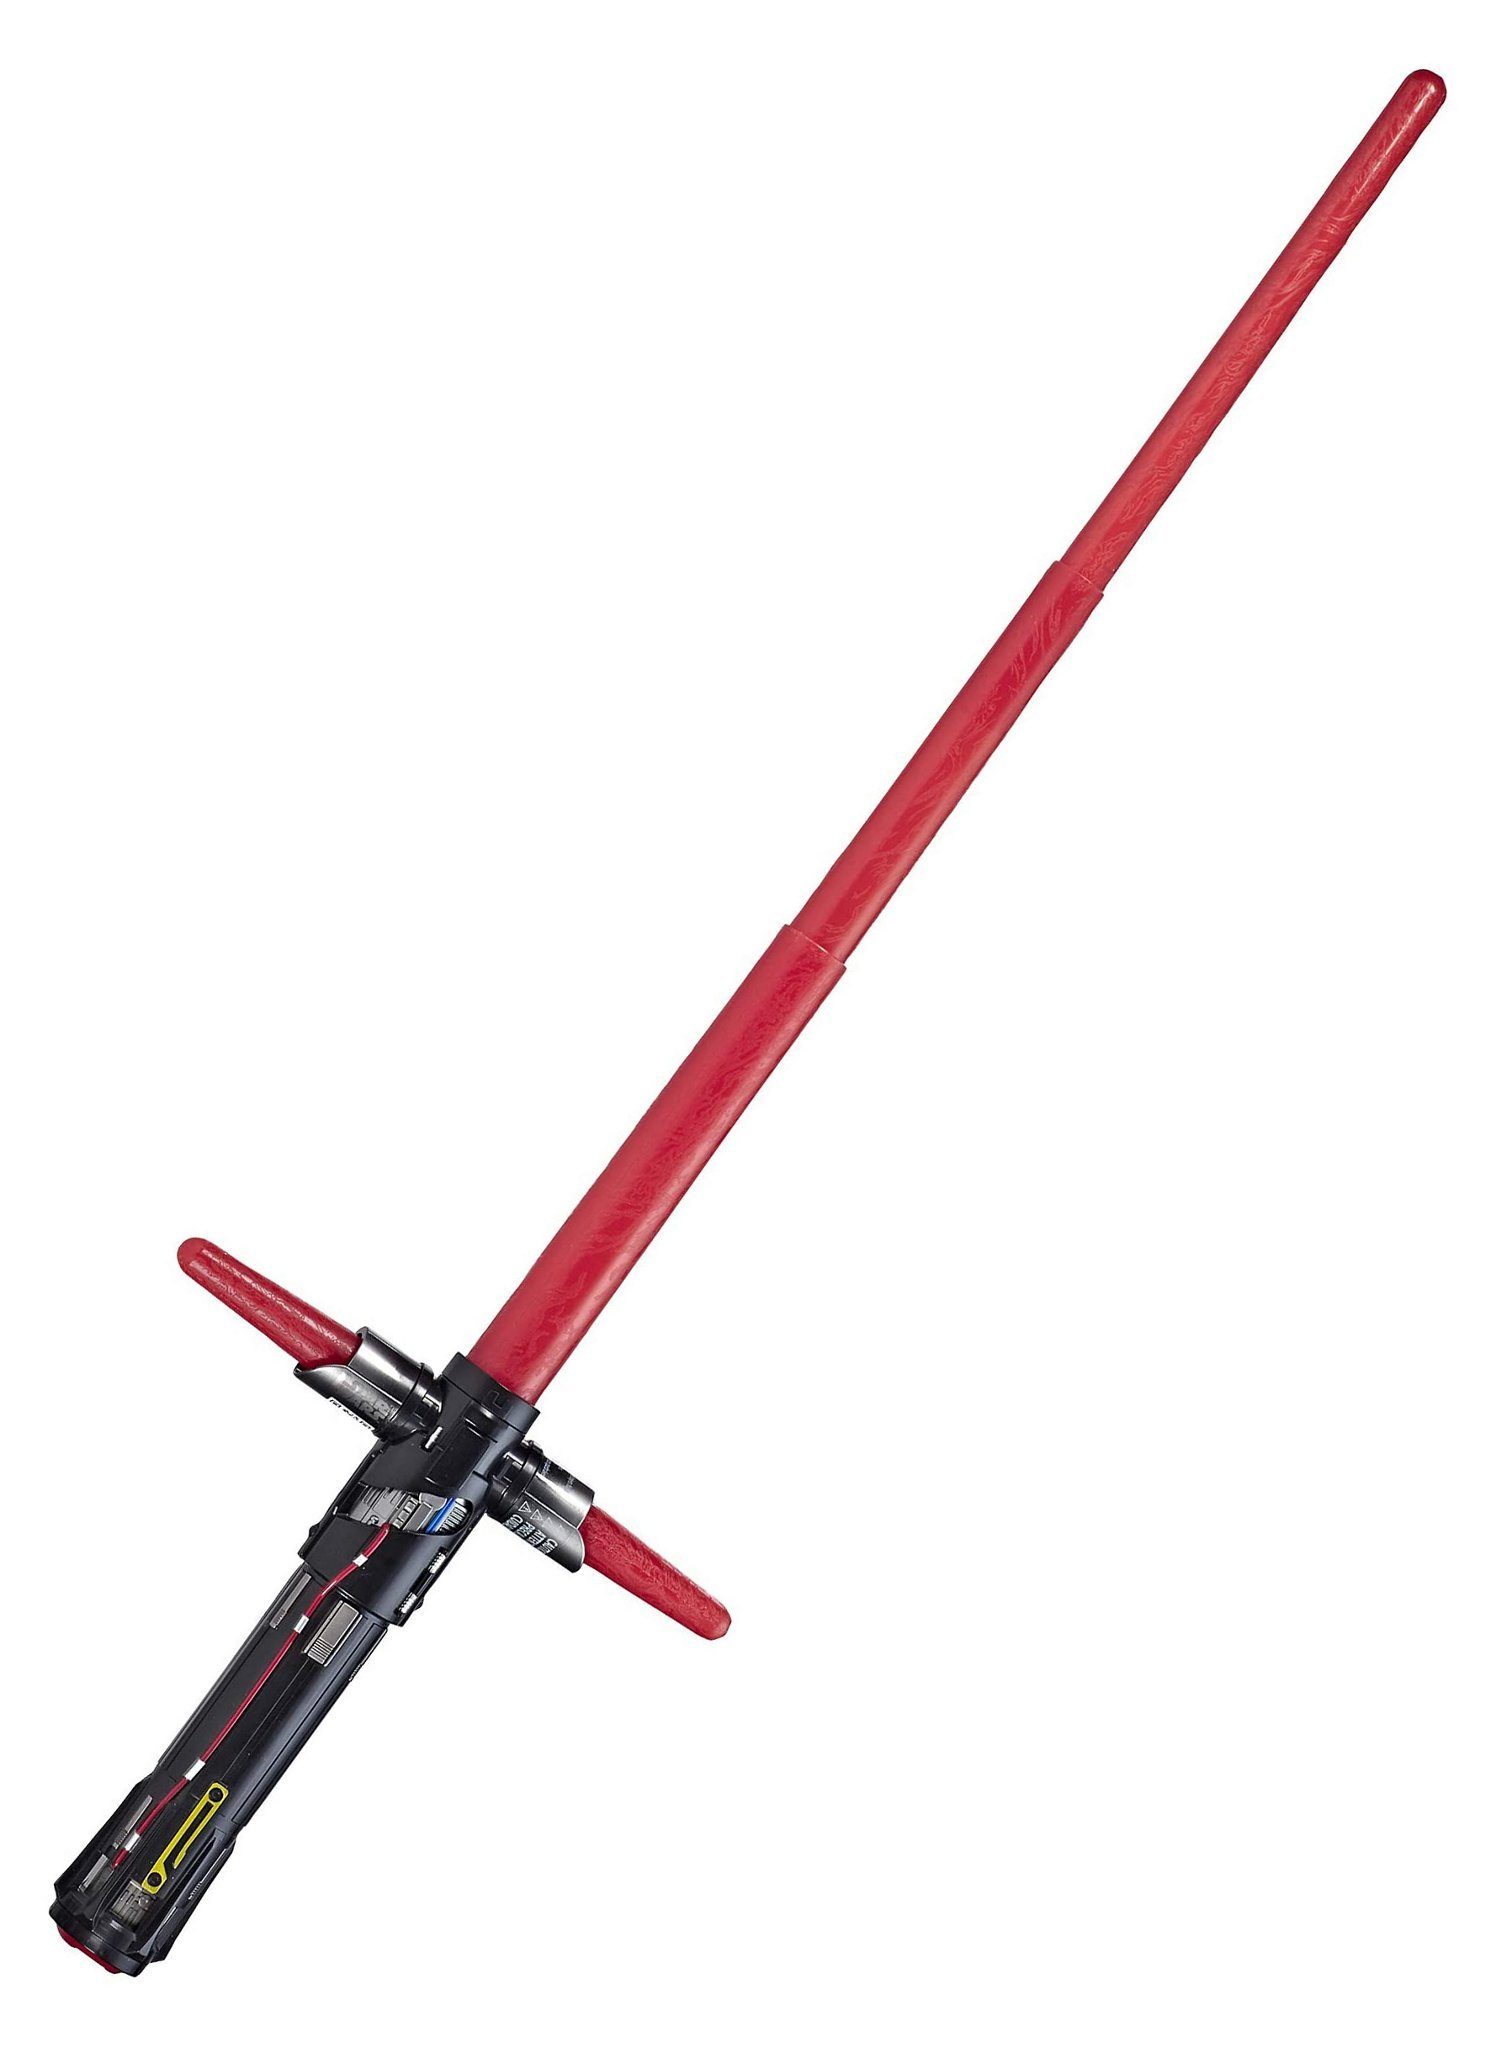 Hasbro Lichtschwert Star Wars Kylo Ren Lichtschwert mit Sound, Markantes  und mittlerweile kaum noch erhältliches Lichtschwert des Widersachers von  der dunklen Seite